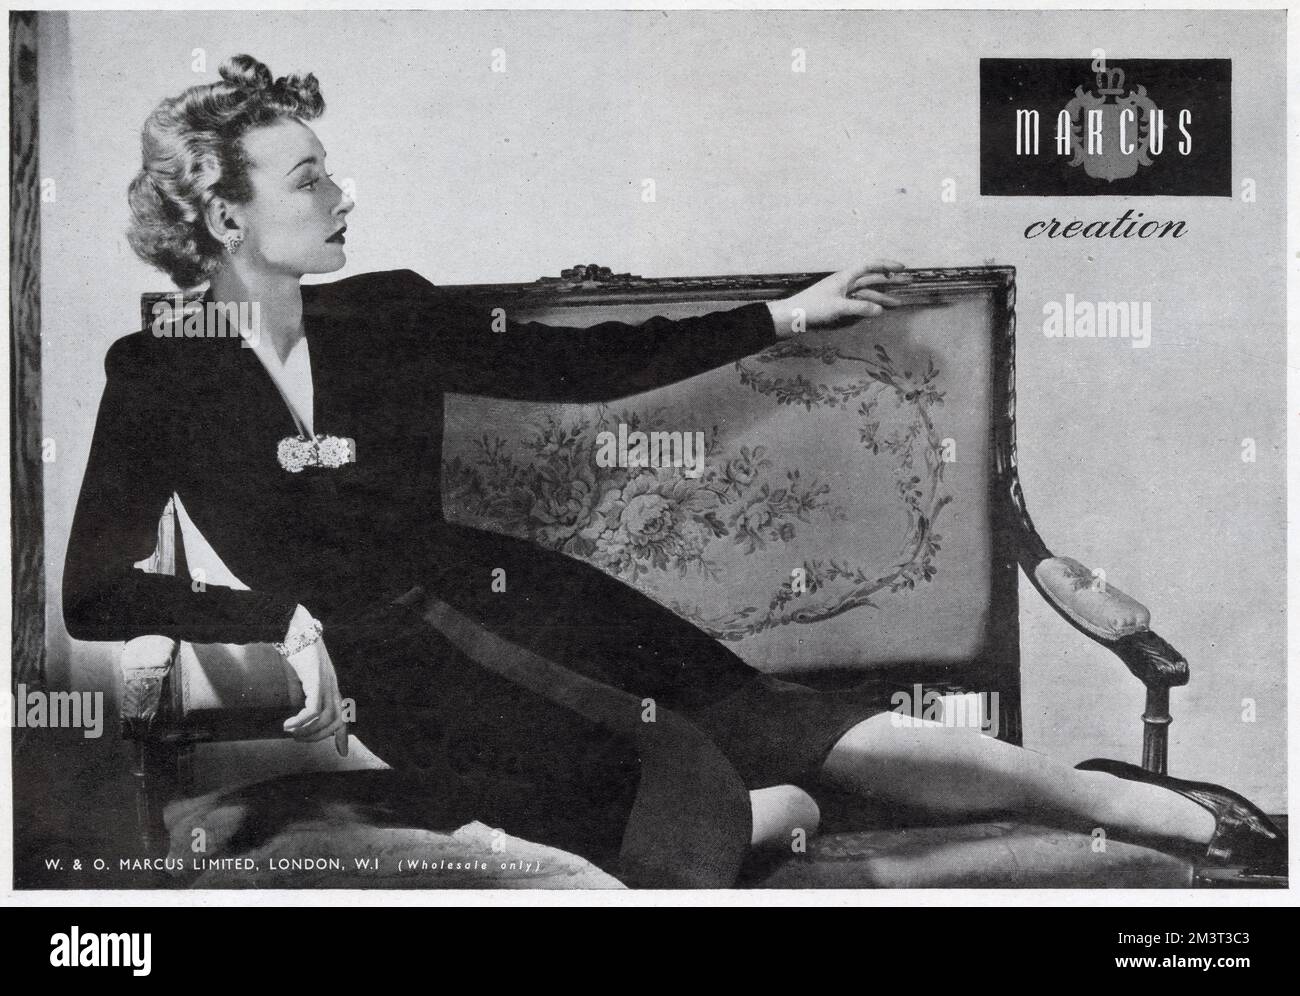 Marcus-Werbung. Datum: 1944 Stockfoto